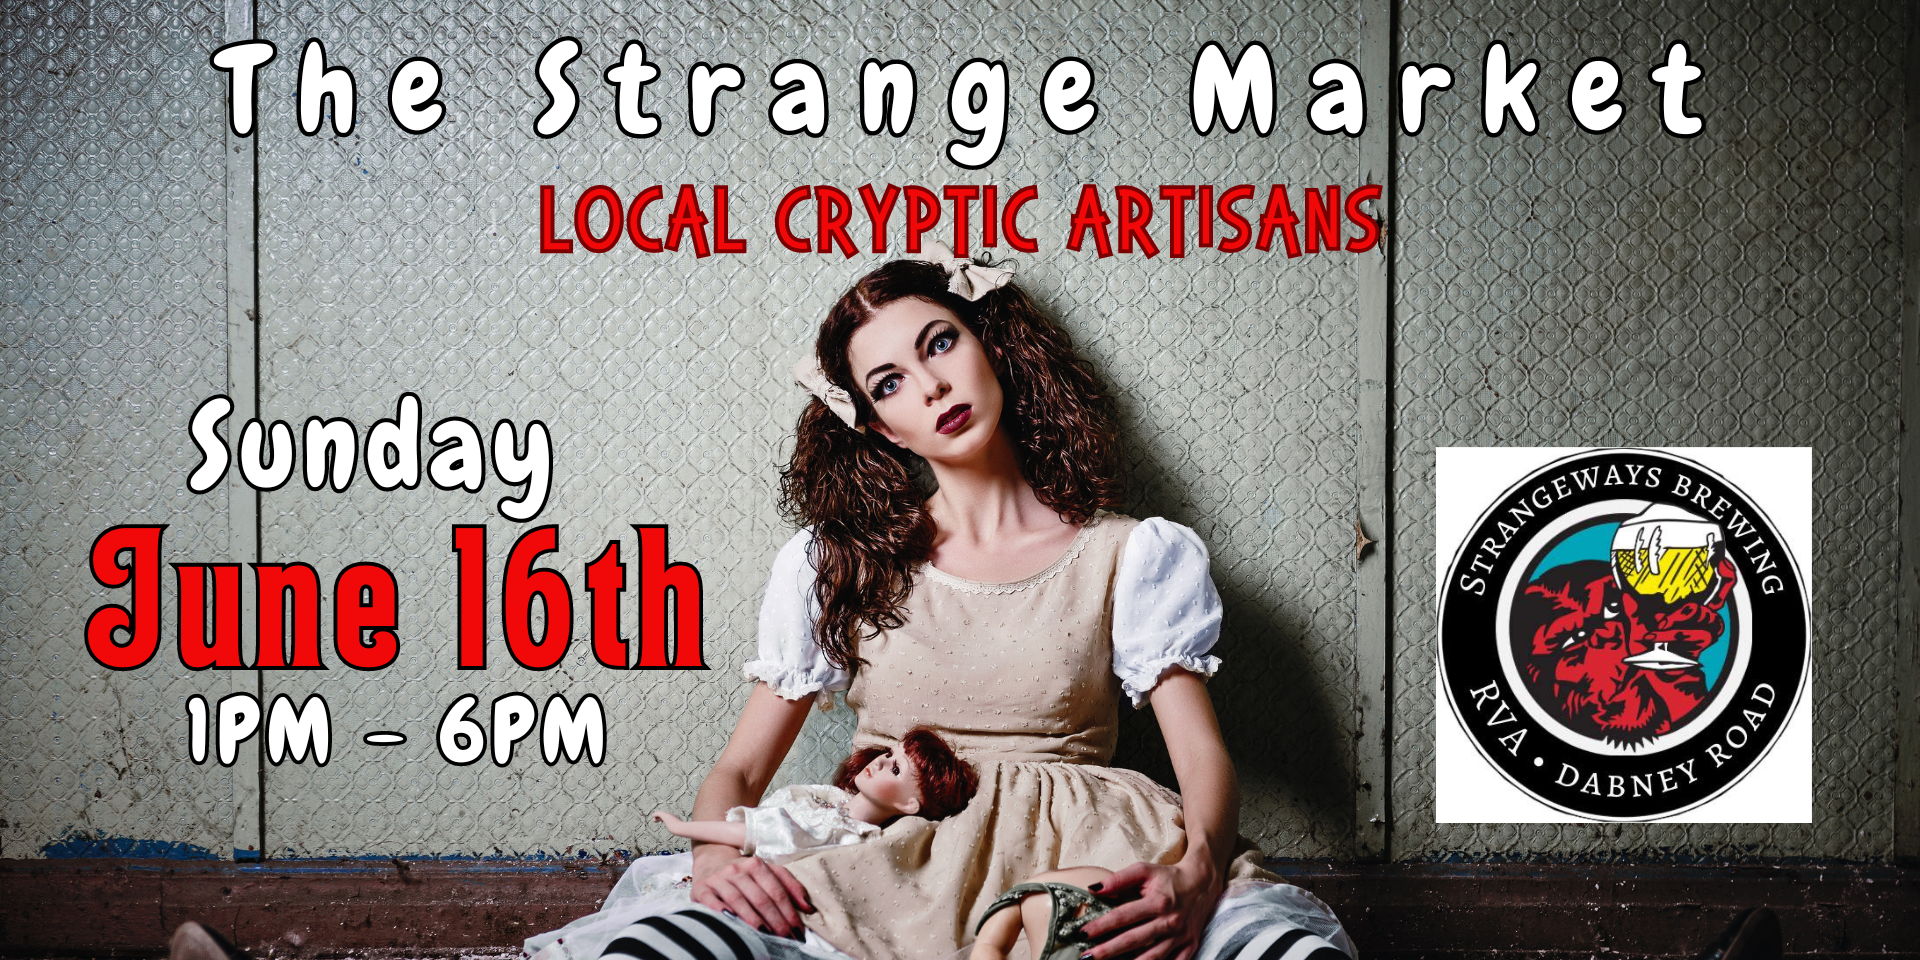 The Strange Market  promotional image